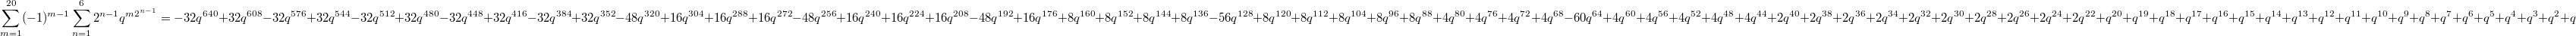 $$\sum_{m=1}^{20}(-1)^{m-1} \sum_{n=1}^{6}2^{n-1} q^{m2^{n-1}}=-32 {{q}^{640}}+32 {{q}^{608}}-32 {{q}^{576}}+32 {{q}^{544}}-32 {{q}^{512}}+32 {{q}^{480}}-32 {{q}^{448}}+32 {{q}^{416}}-32 {{q}^{384}}+32 {{q}^{352}}-48 {{q}^{320}}+16 {{q}^{304}}+16 {{q}^{288}}+16 {{q}^{272}}-48 {{q}^{256}}+16 {{q}^{240}}+16 {{q}^{224}}+16 {{q}^{208}}-48 {{q}^{192}}+16 {{q}^{176}}+8 {{q}^{160}}+8 {{q}^{152}}+8 {{q}^{144}}+8 {{q}^{136}}-56 {{q}^{128}}+8 {{q}^{120}}+8 {{q}^{112}}+8 {{q}^{104}}+8 {{q}^{96}}+8 {{q}^{88}}+4 {{q}^{80}}+4 {{q}^{76}}+4 {{q}^{72}}+4 {{q}^{68}}-60 {{q}^{64}}+4 {{q}^{60}}+4 {{q}^{56}}+4 {{q}^{52}}+4 {{q}^{48}}+4 {{q}^{44}}+2 {{q}^{40}}+2 {{q}^{38}}+2 {{q}^{36}}+2 {{q}^{34}}+2 {{q}^{32}}+2 {{q}^{30}}+2 {{q}^{28}}+2 {{q}^{26}}+2 {{q}^{24}}+2 {{q}^{22}}+{{q}^{20}}+{{q}^{19}}+{{q}^{18}}+{{q}^{17}}+{{q}^{16}}+{{q}^{15}}+{{q}^{14}}+{{q}^{13}}+{{q}^{12}}+{{q}^{11}}+{{q}^{10}}+{{q}^{9}}+{{q}^{8}}+{{q}^{7}}+{{q}^{6}}+{{q}^{5}}+{{q}^{4}}+{{q}^{3}}+{{q}^{2}}+q$$